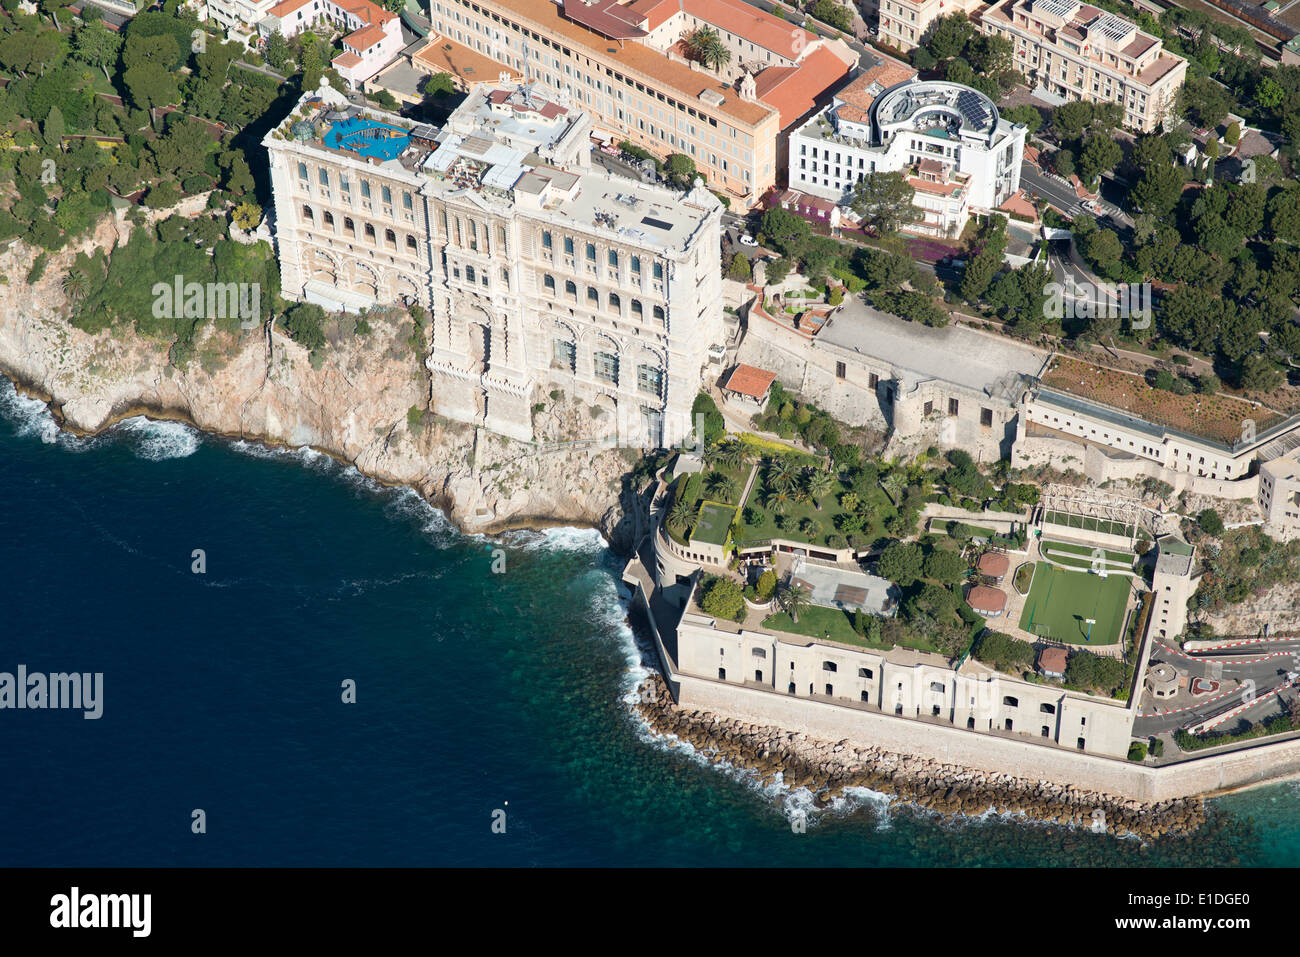 VUE AÉRIENNE.Musée océanographique historique sur une falaise surplombant la mer Méditerranée.Monaco-ville (aussi appelé le Rocher), Principauté de Monaco. Banque D'Images